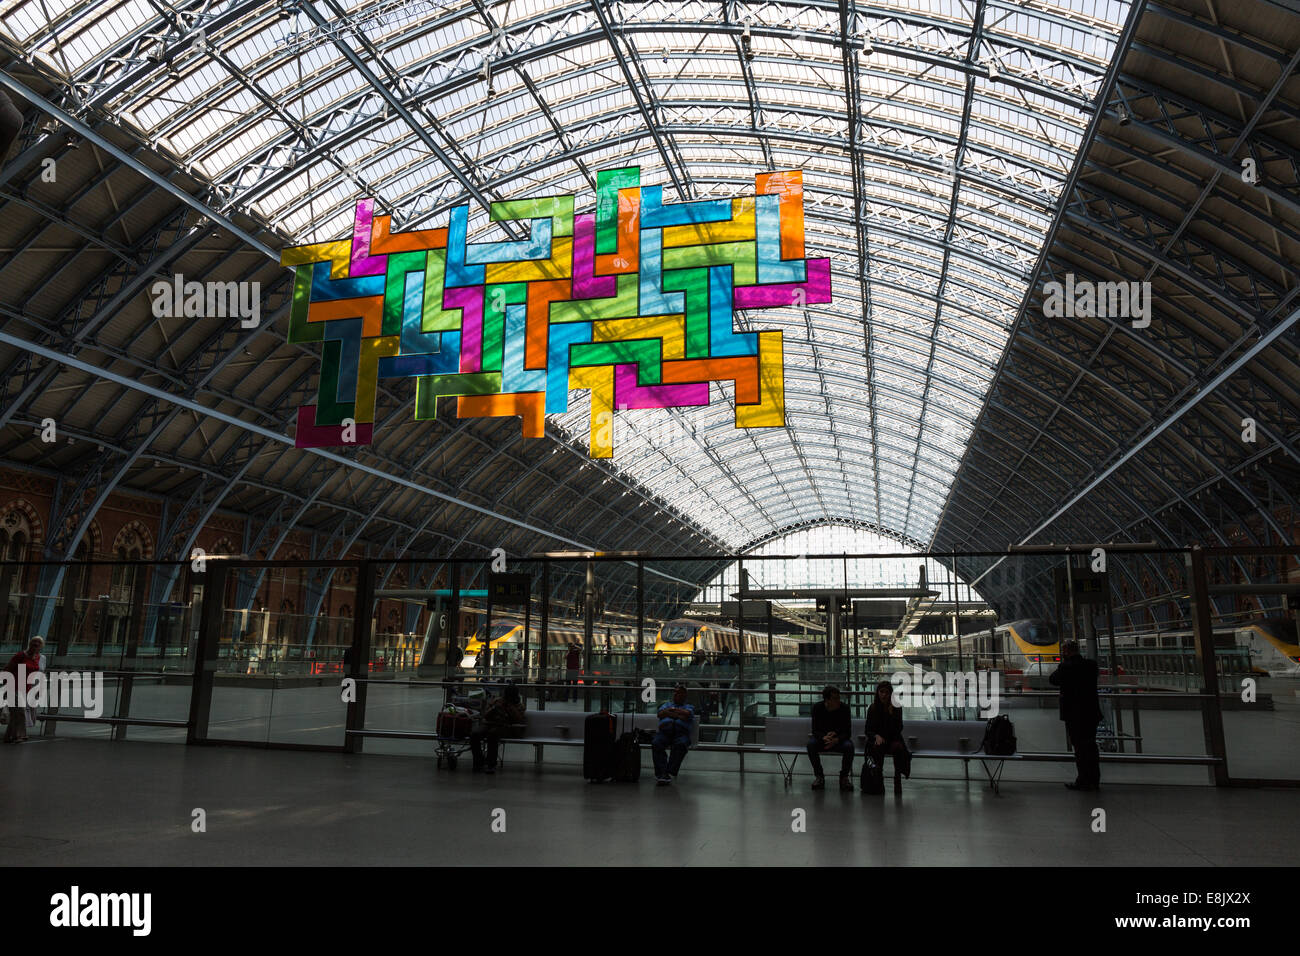 Interno di San Pancrazio stazione ferroviaria internazionale di Londra, Regno Unito, con l'illustrazione "Chromolocomotion" sospesa sotto la forma arcuata Foto Stock